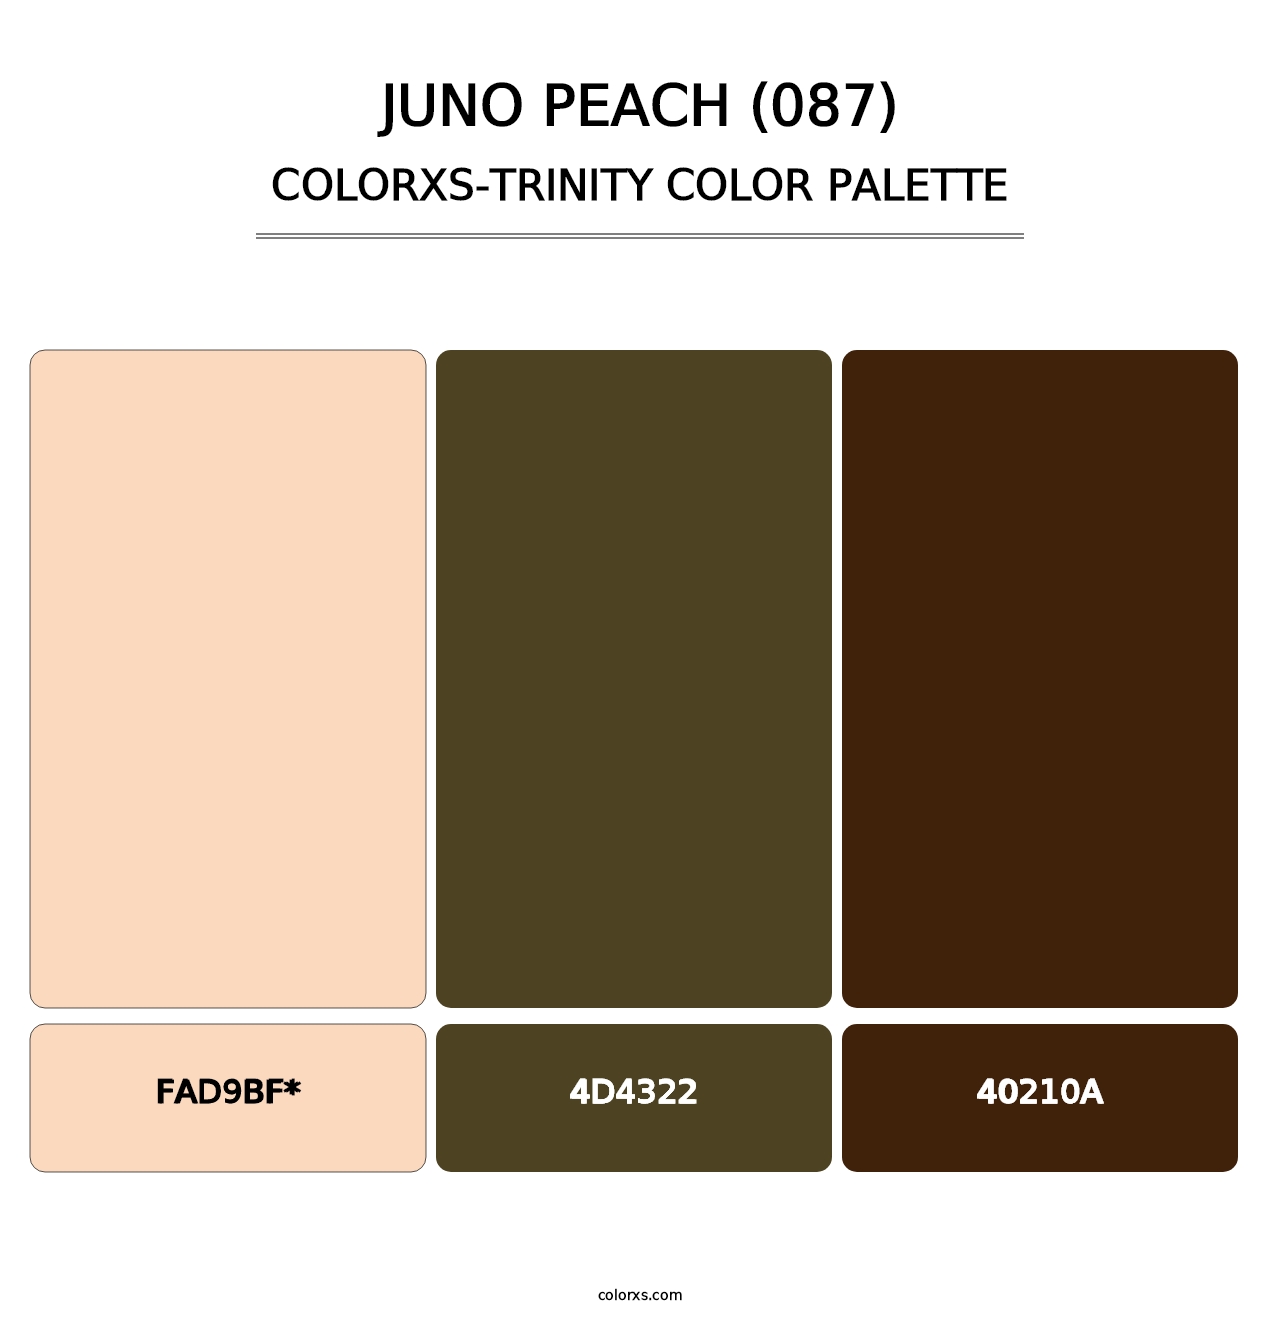 Juno Peach (087) - Colorxs Trinity Palette